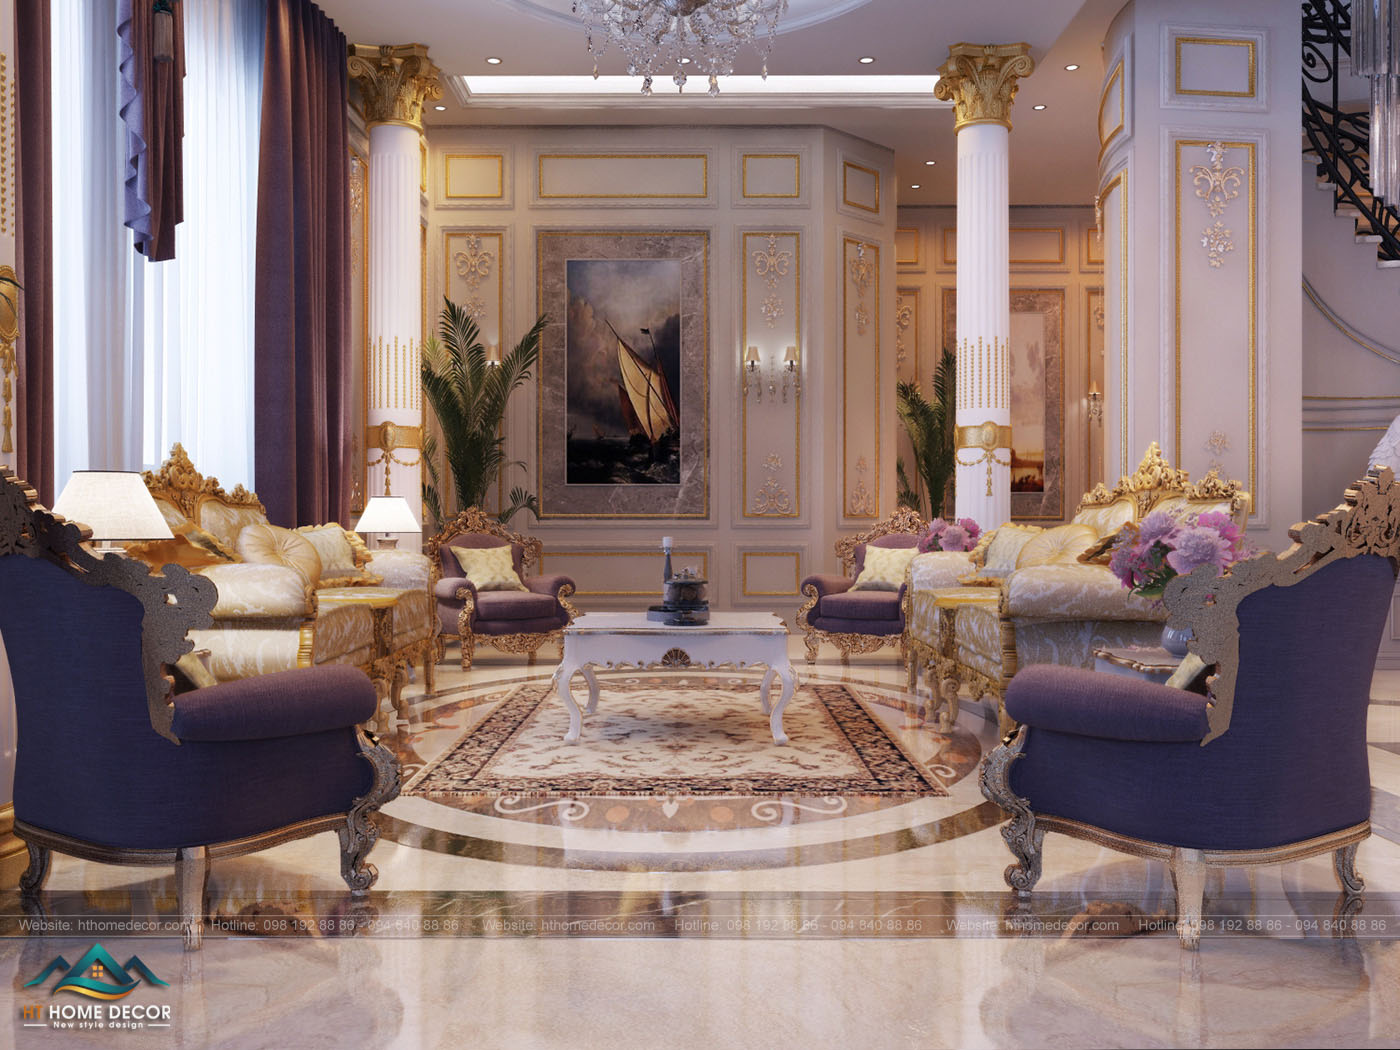 Nội thất tân cổ điển phù hợp với không gian biệt thự lớn. Màu vàng đồng kết hợp với màu trắng cho biệt thự một không gian hoàng gia.